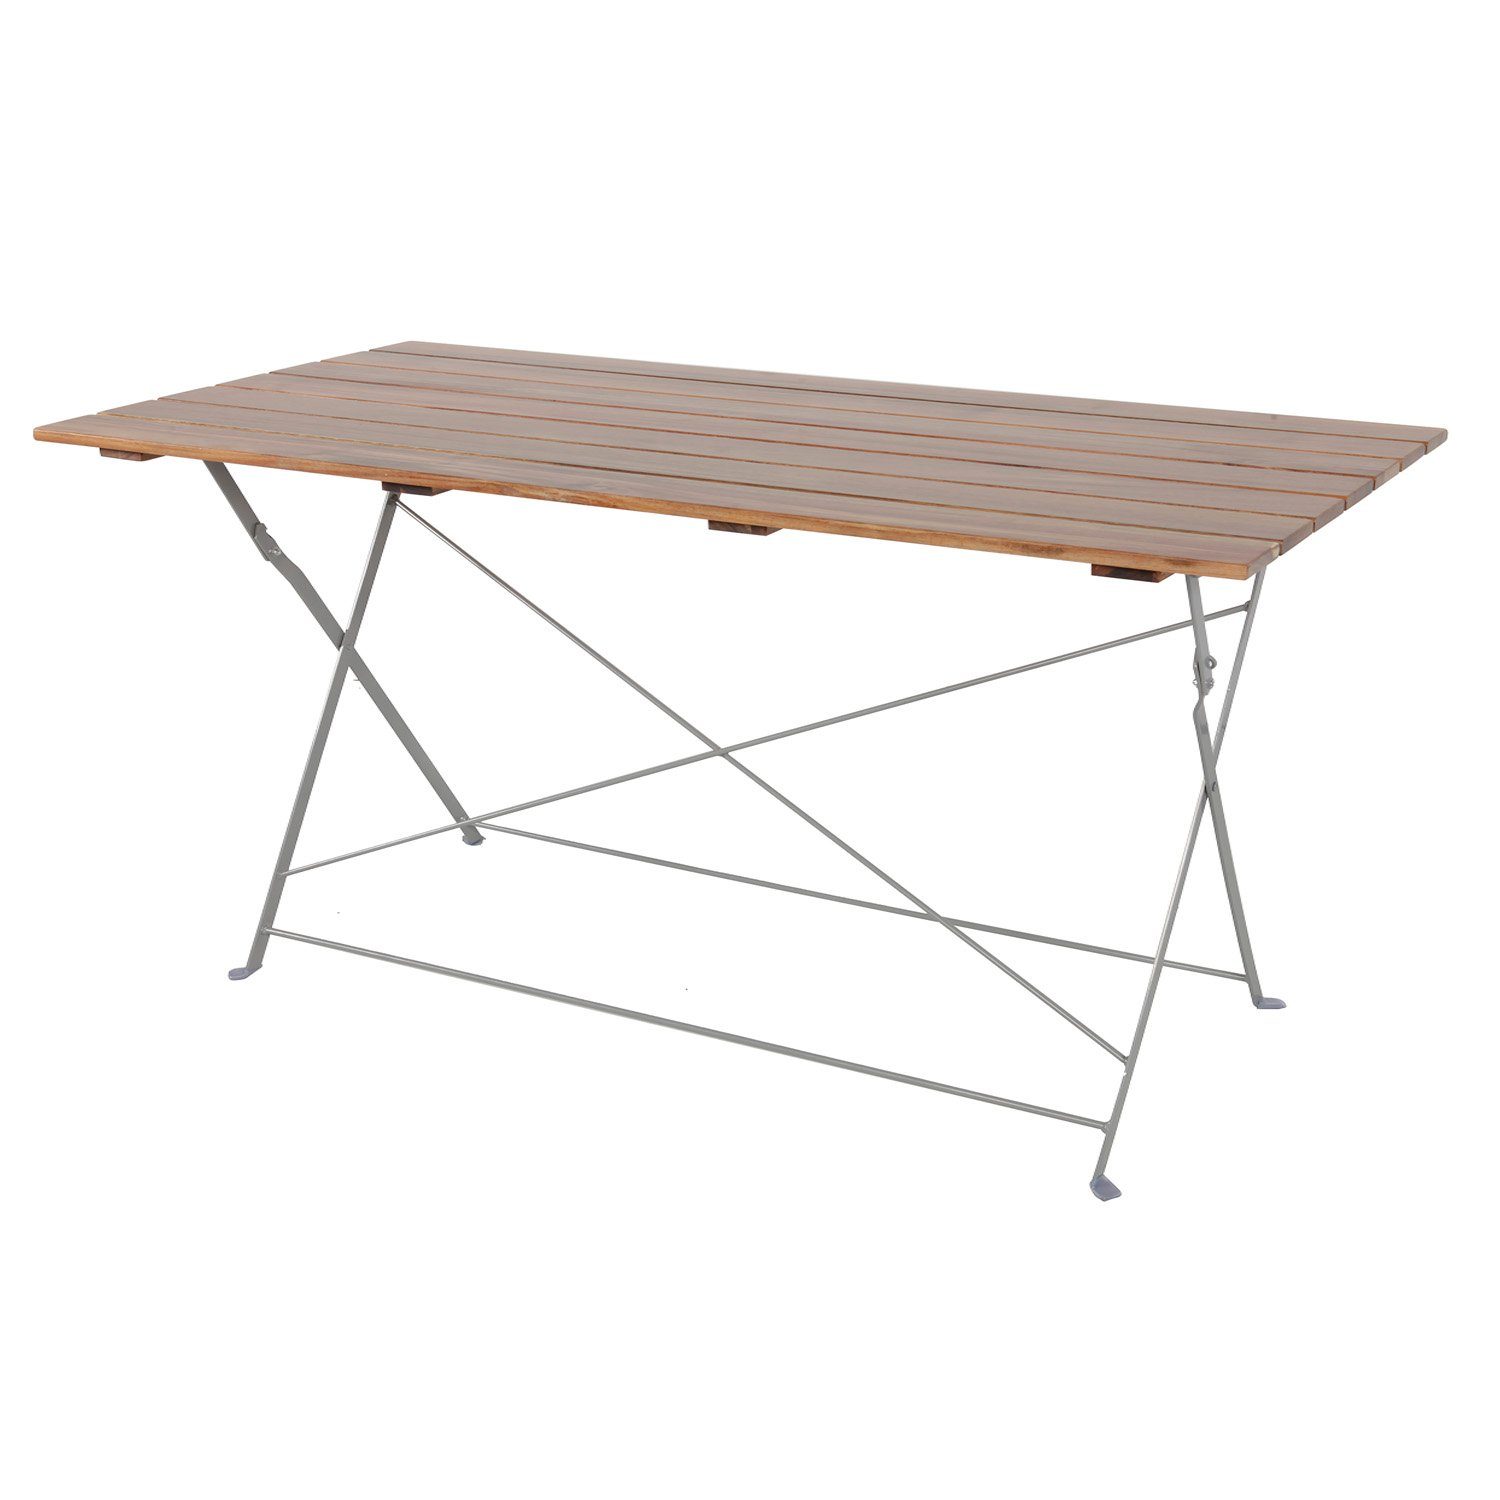 Klapptisch klappbar Gartentisch Küchentisch Stahl INDA-Exclusiv Akazie Tisch 120x70cm Esstisch Biergarten